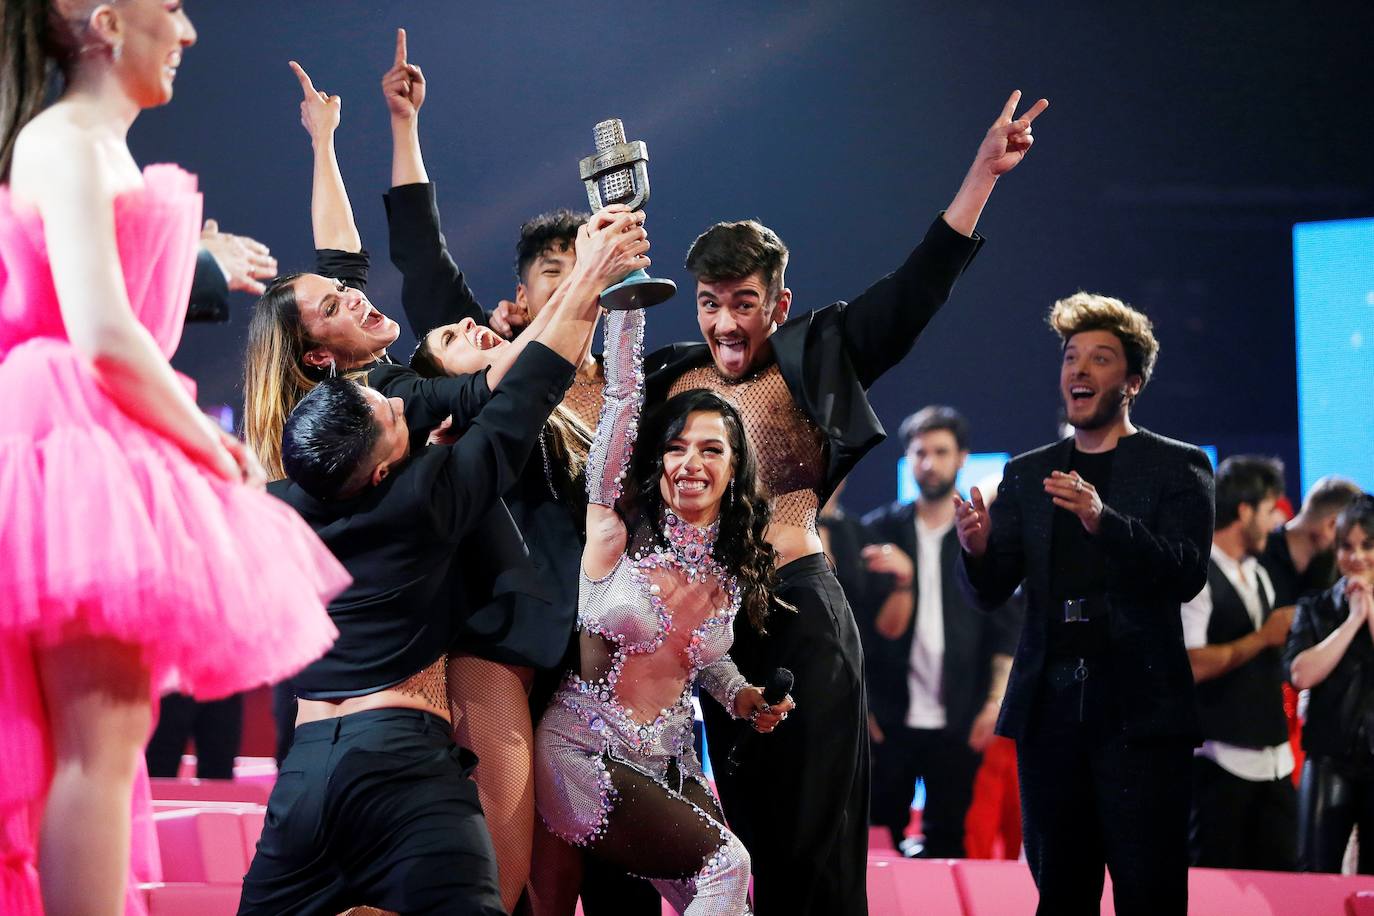 La cantante Chanel y su canción "SloMo" representarán a España en Eurovisión 2022 tras su victoria en la final de la primera edición del Benidorm Fest con 96 puntos